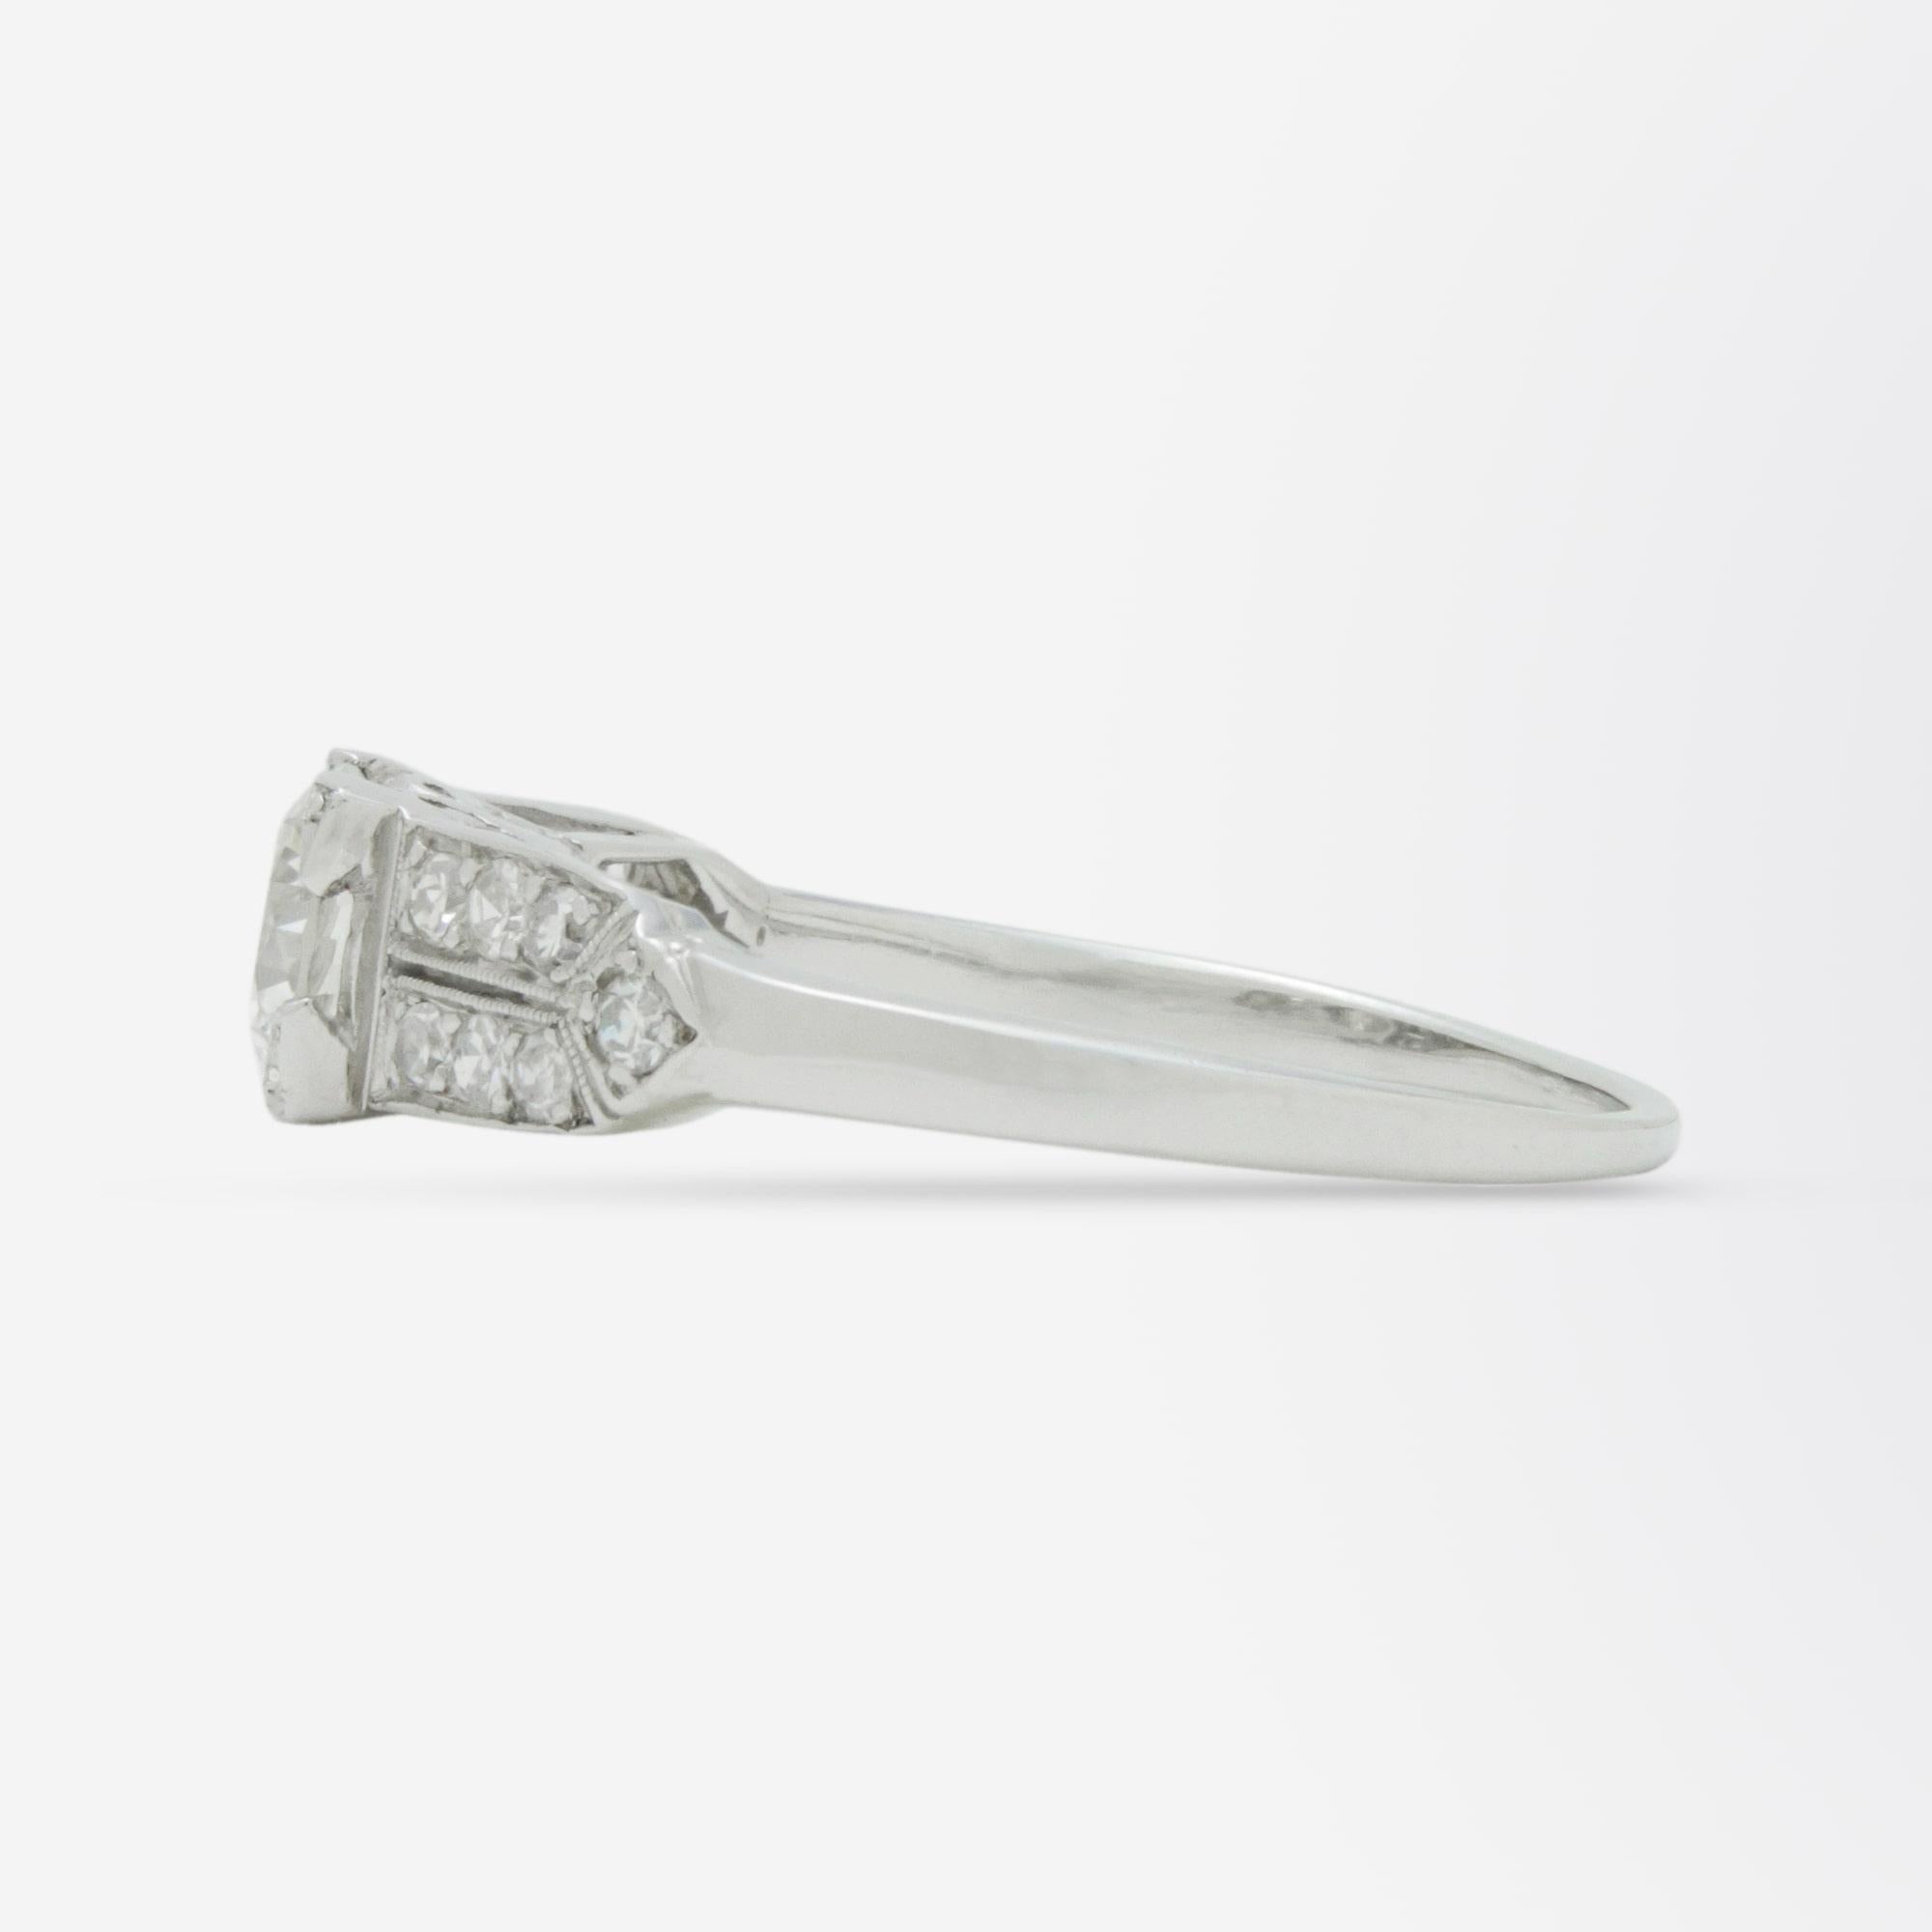 Brilliant Cut Platinum and Diamond Art Deco Style Ring